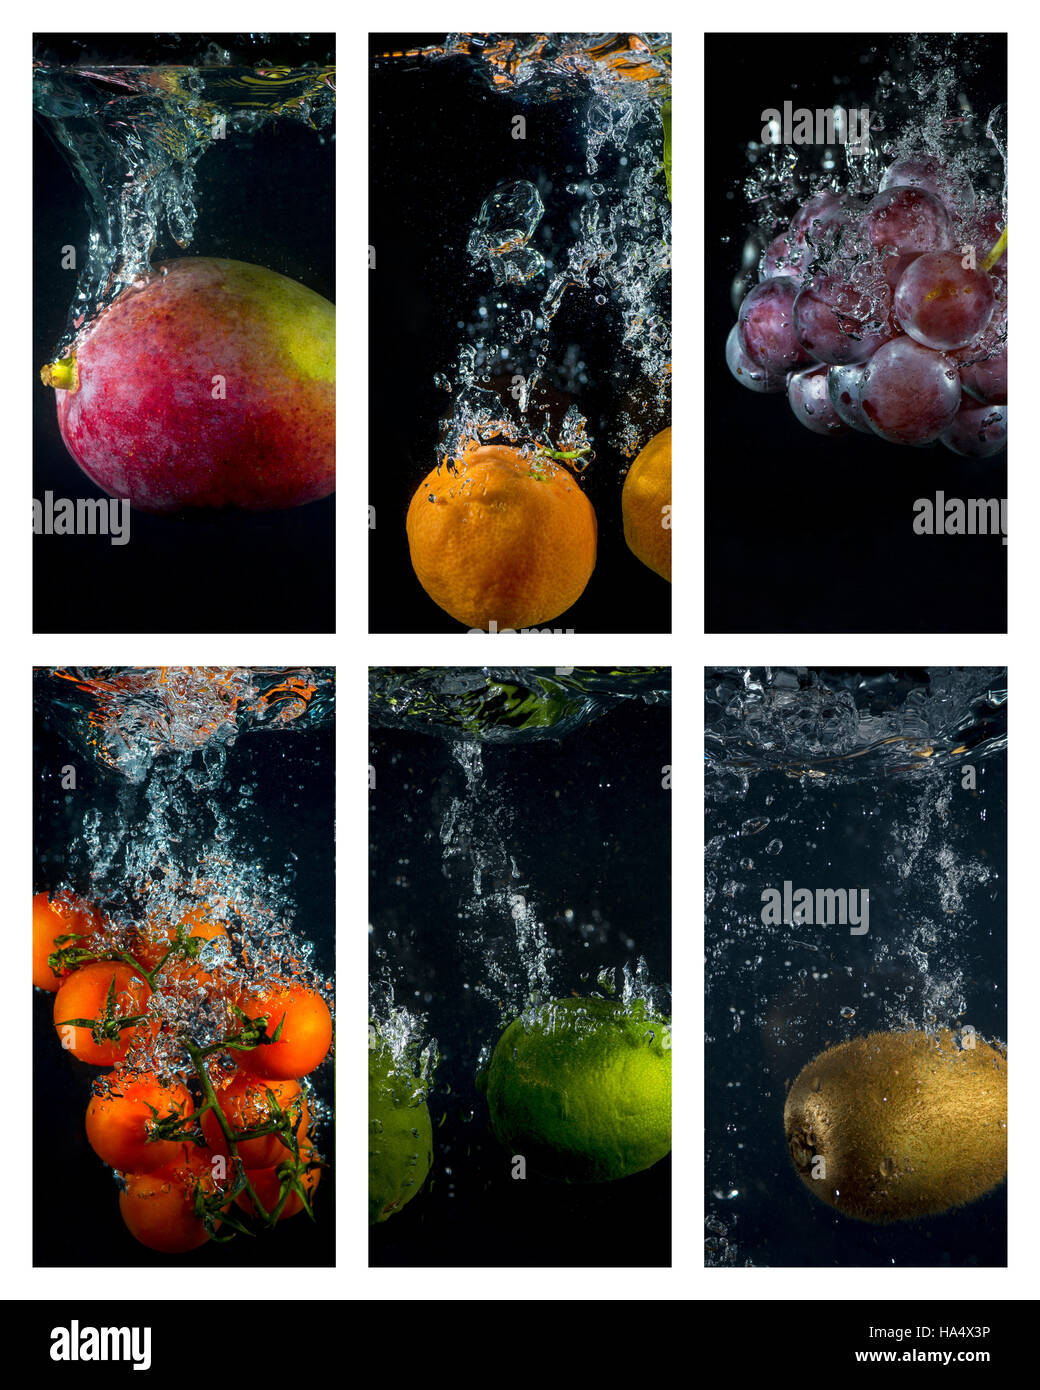 Obst und Gemüse mit Spritzern und Luftblasen ins Wasser fallen  Stockfotografie - Alamy